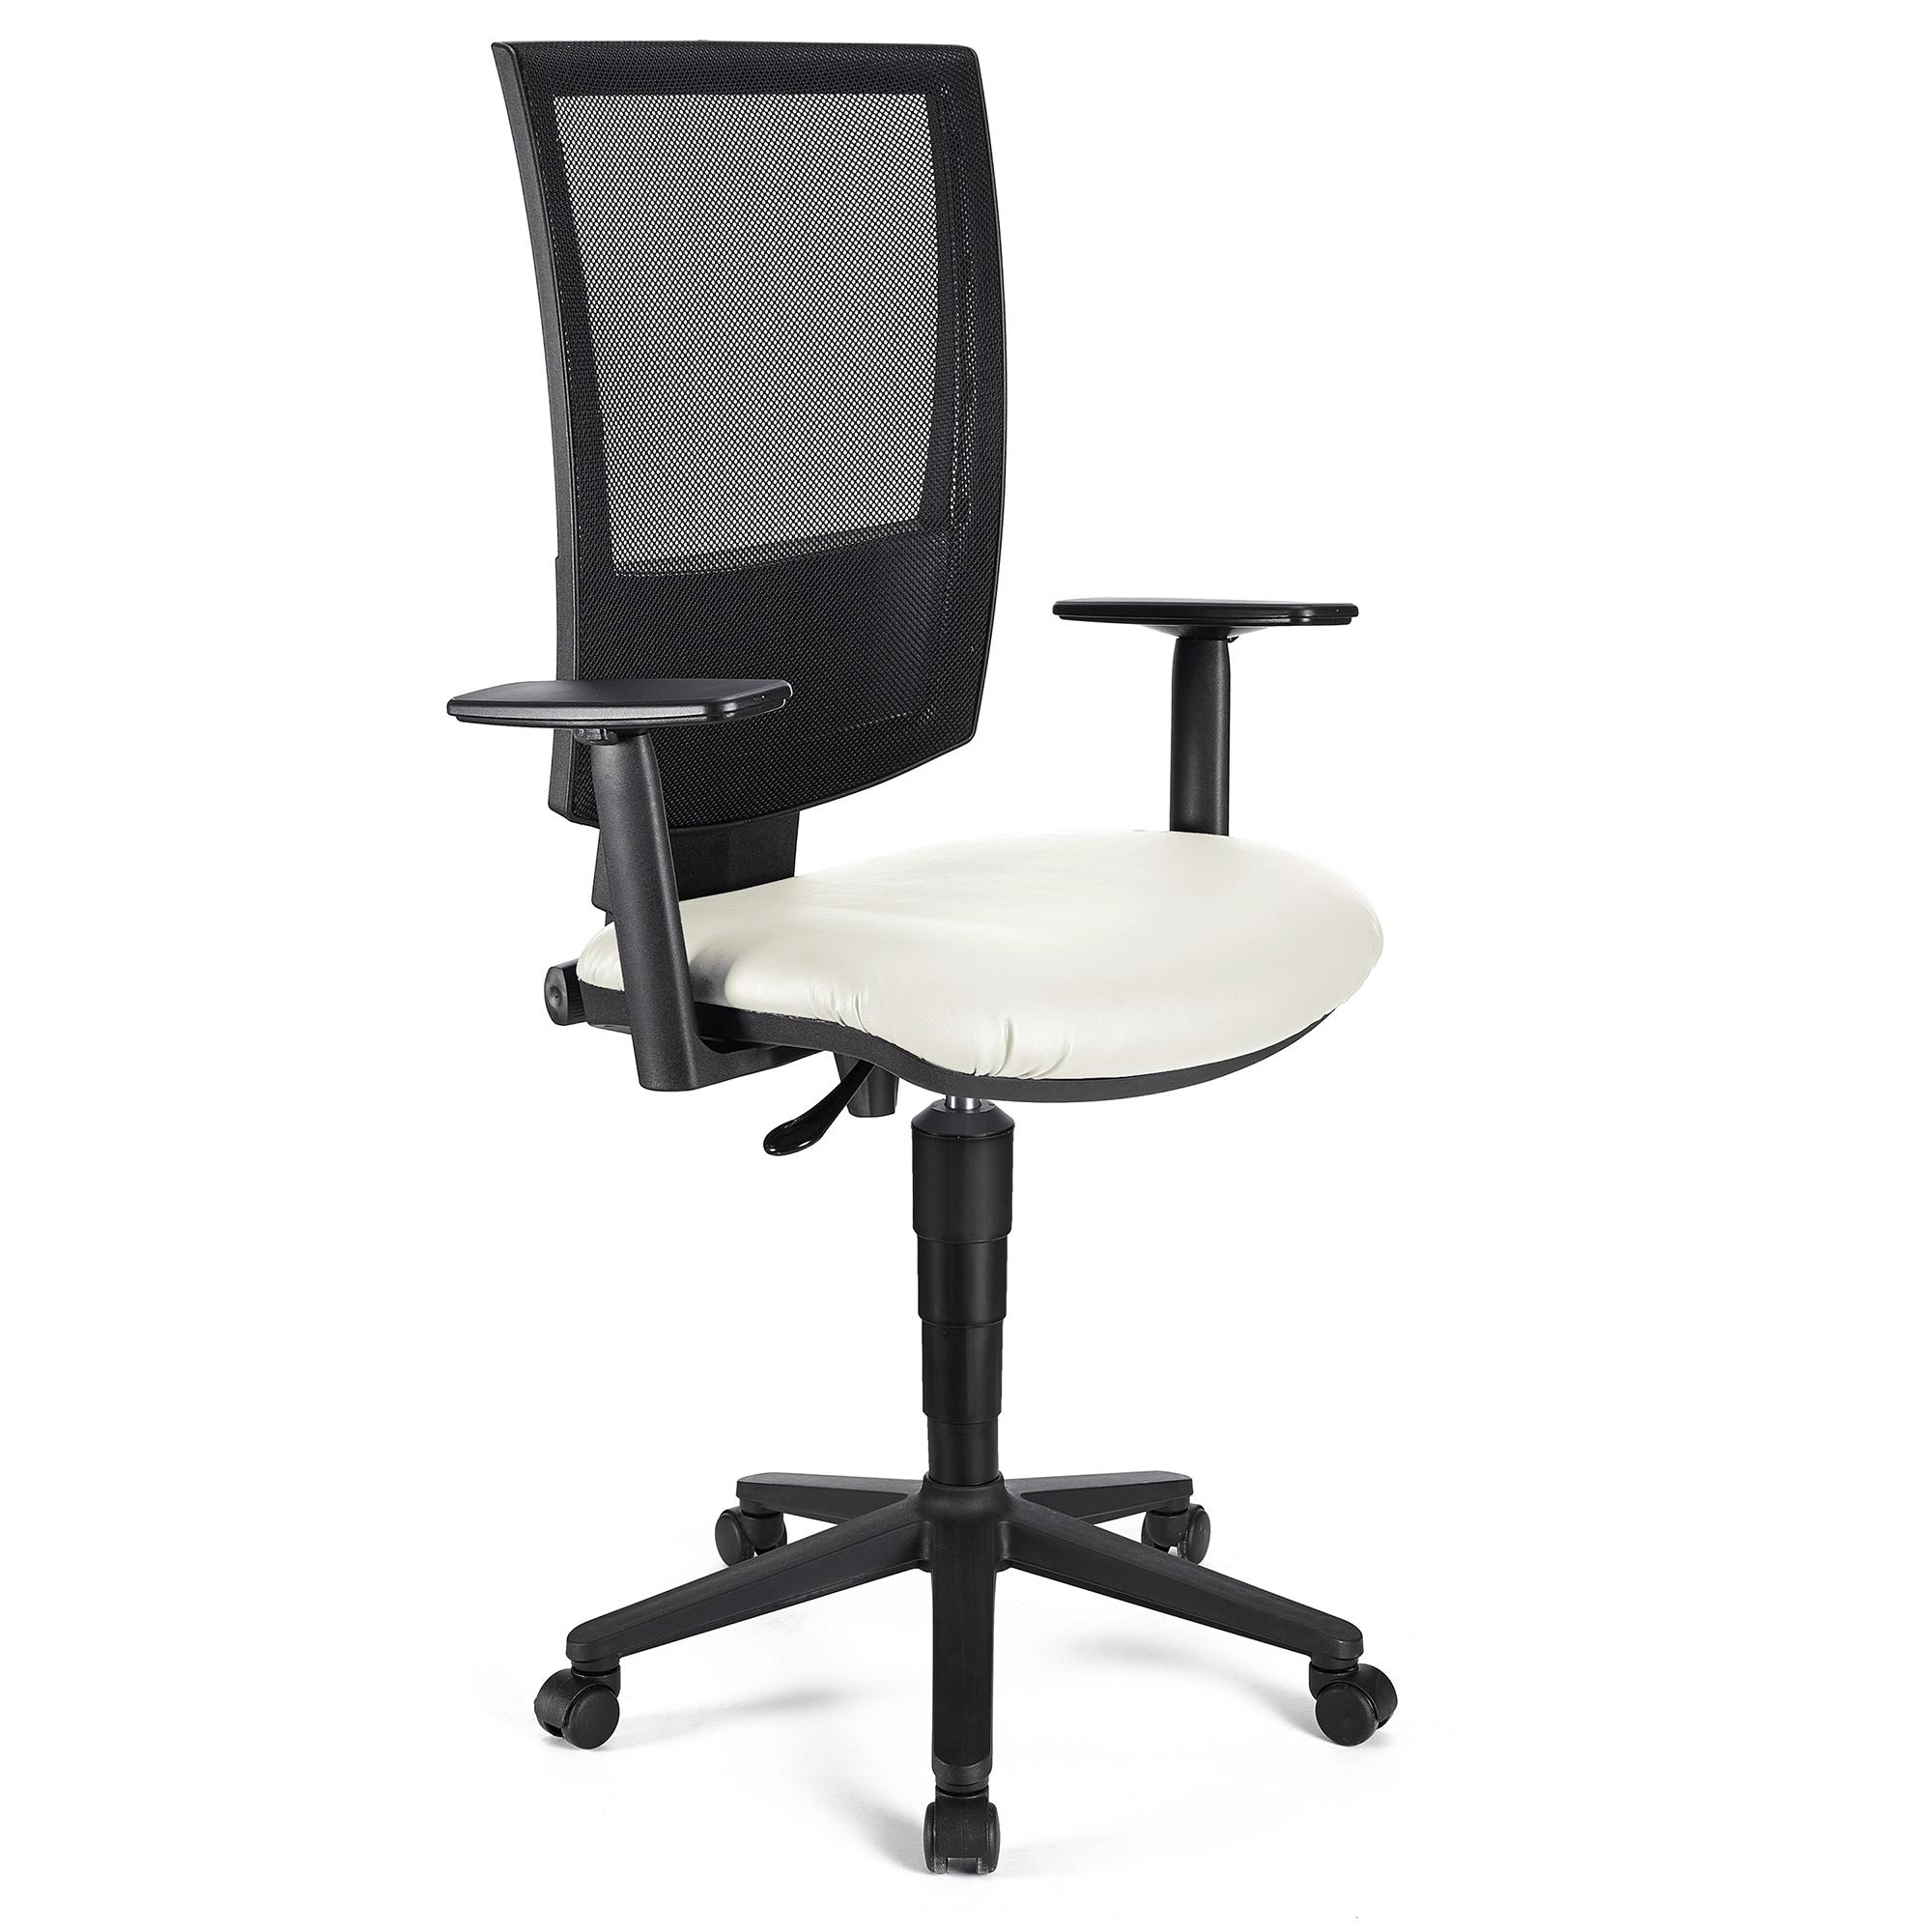 Bürostuhl PANDORA PLUS LEDER mit verstellbaren Armlehnen, Rückenlehne mit Netzbezug, dicke Polsterung, Farbe Weiß